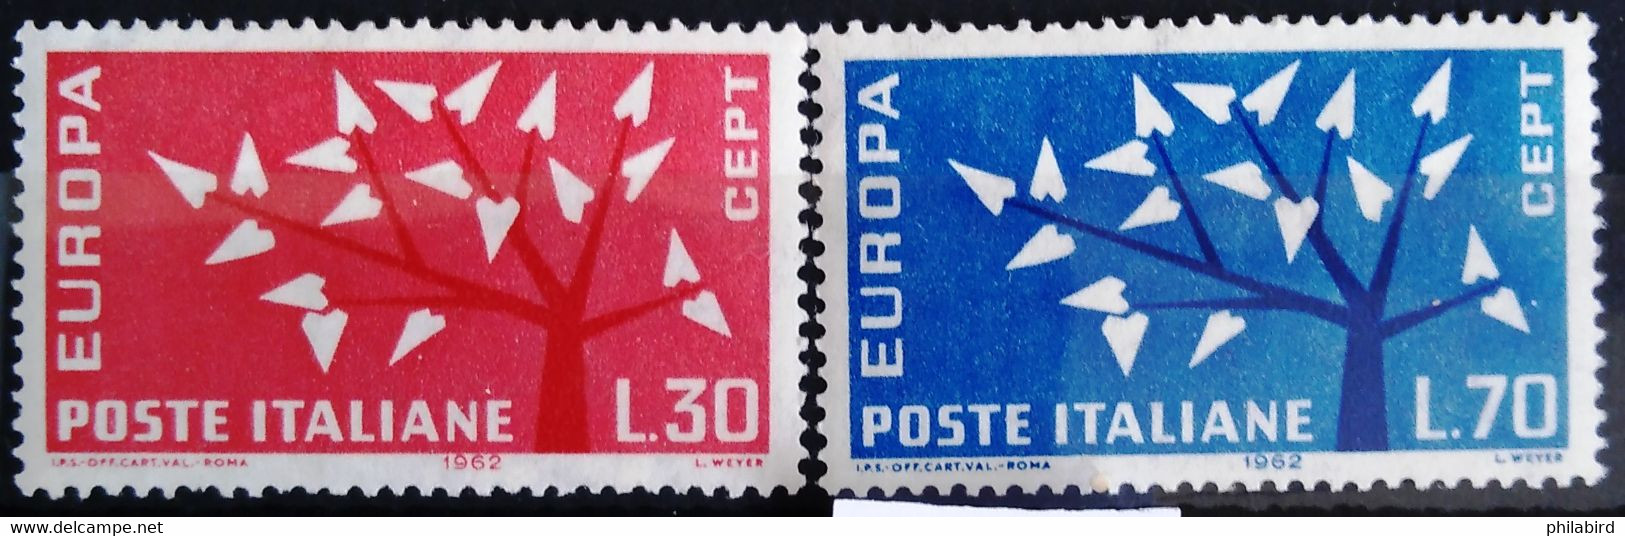 EUROPA 1962 - ITALIE                    N° 873/874                        NEUF** - 1962